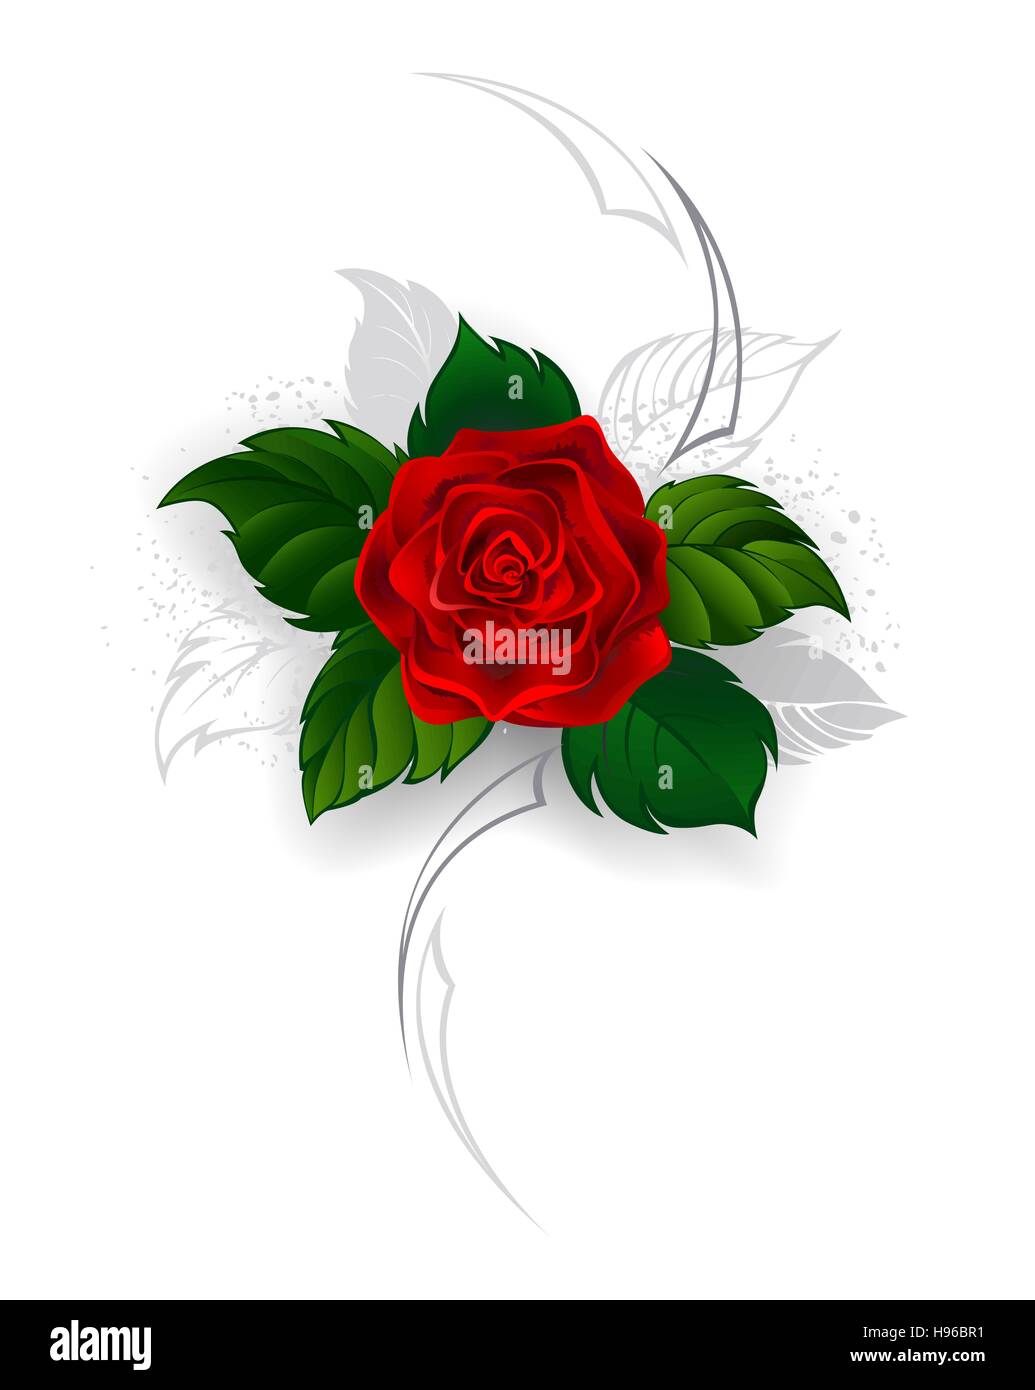 Peint artistiquement, blooming rose rouge avec des feuilles gris dans le style d'un tatouage sur un fond blanc. Illustration de Vecteur